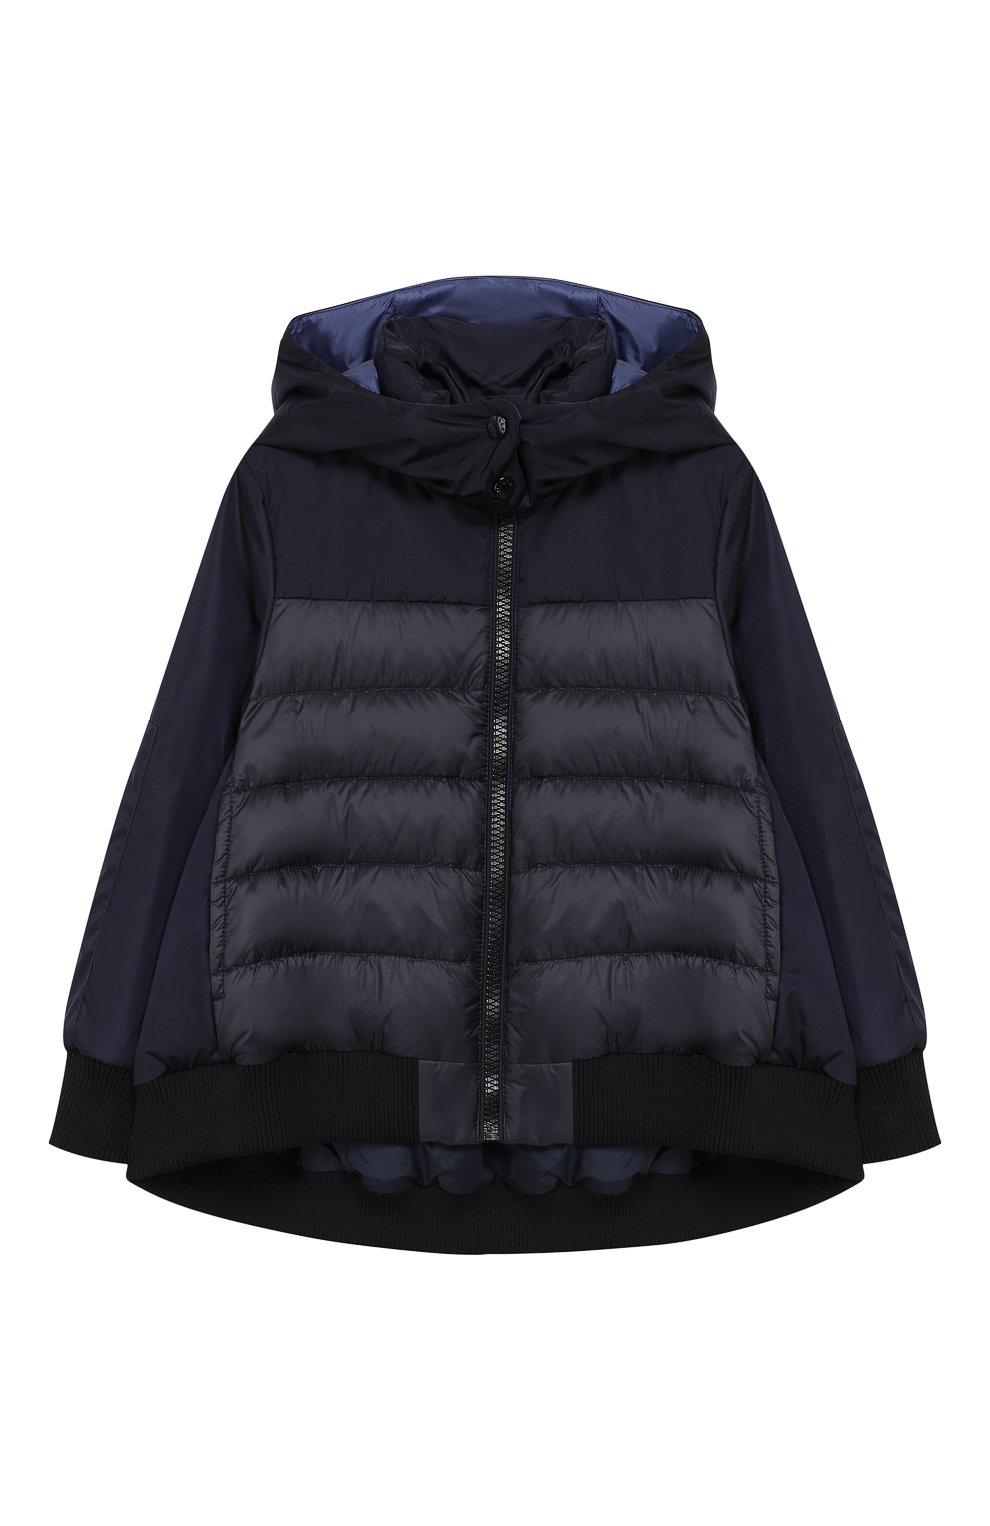 Верхняя одежда Moncler Enfant, Куртка на молнии Moncler Enfant, Италия, Синий, Полиамид: 100%; Подкладка-полиамид: 100%;, 7178093  - купить